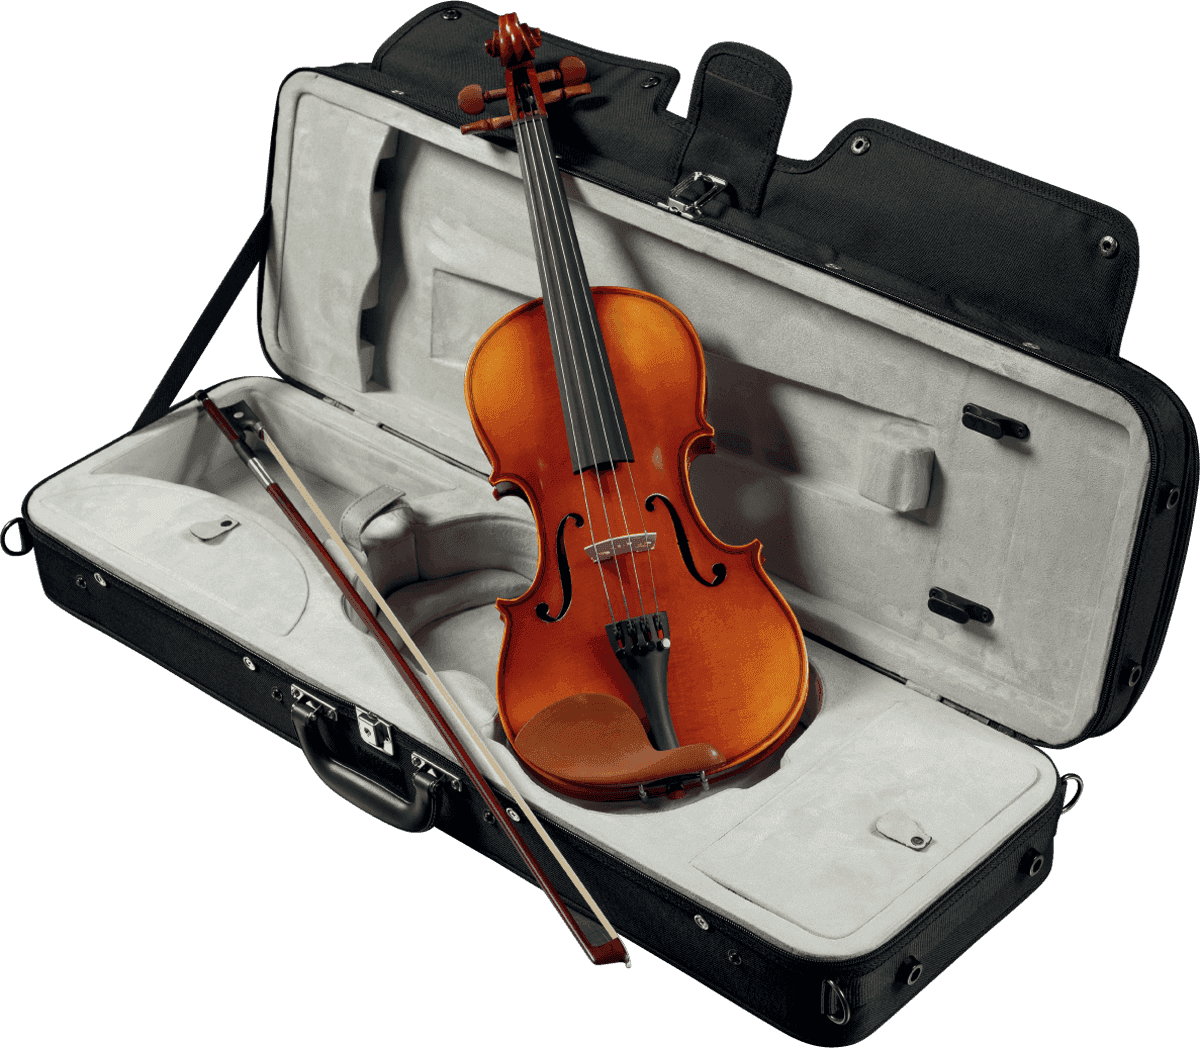 Vendome A44 Gramont Violon 4/4 - Acoustic violin - Variation 1